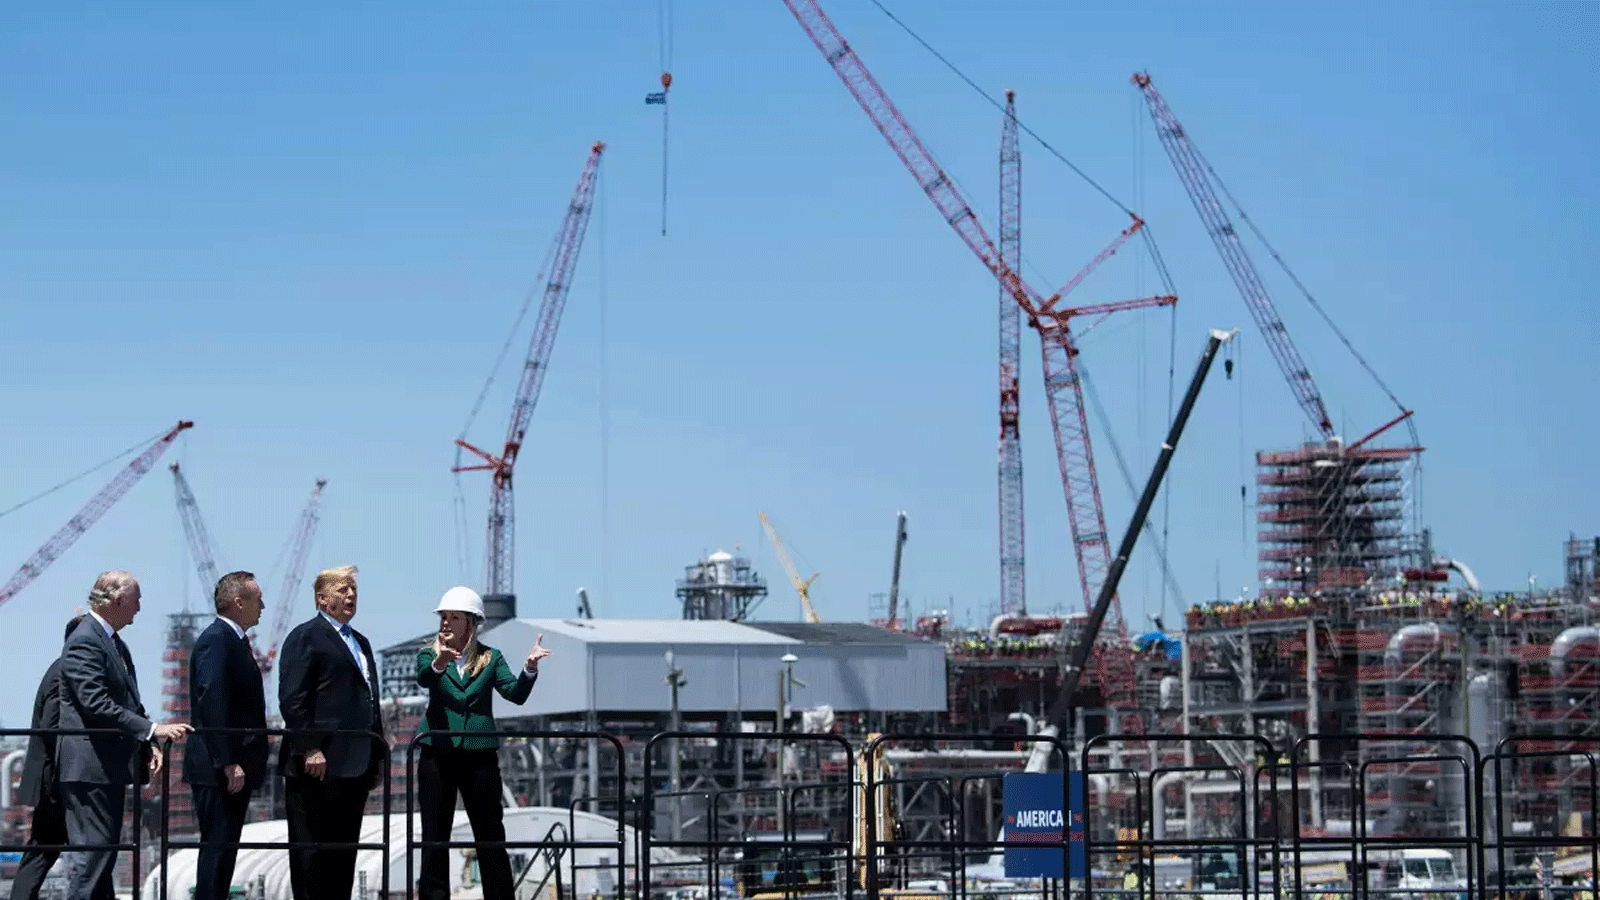 الرئيس دونالد ترامب وآخرون يتجولون في منشأة كاميرون لتصدير الغاز الطبيعي المسال في 14 أيار\مايو 2019، في هاكبيري، لويزيانا